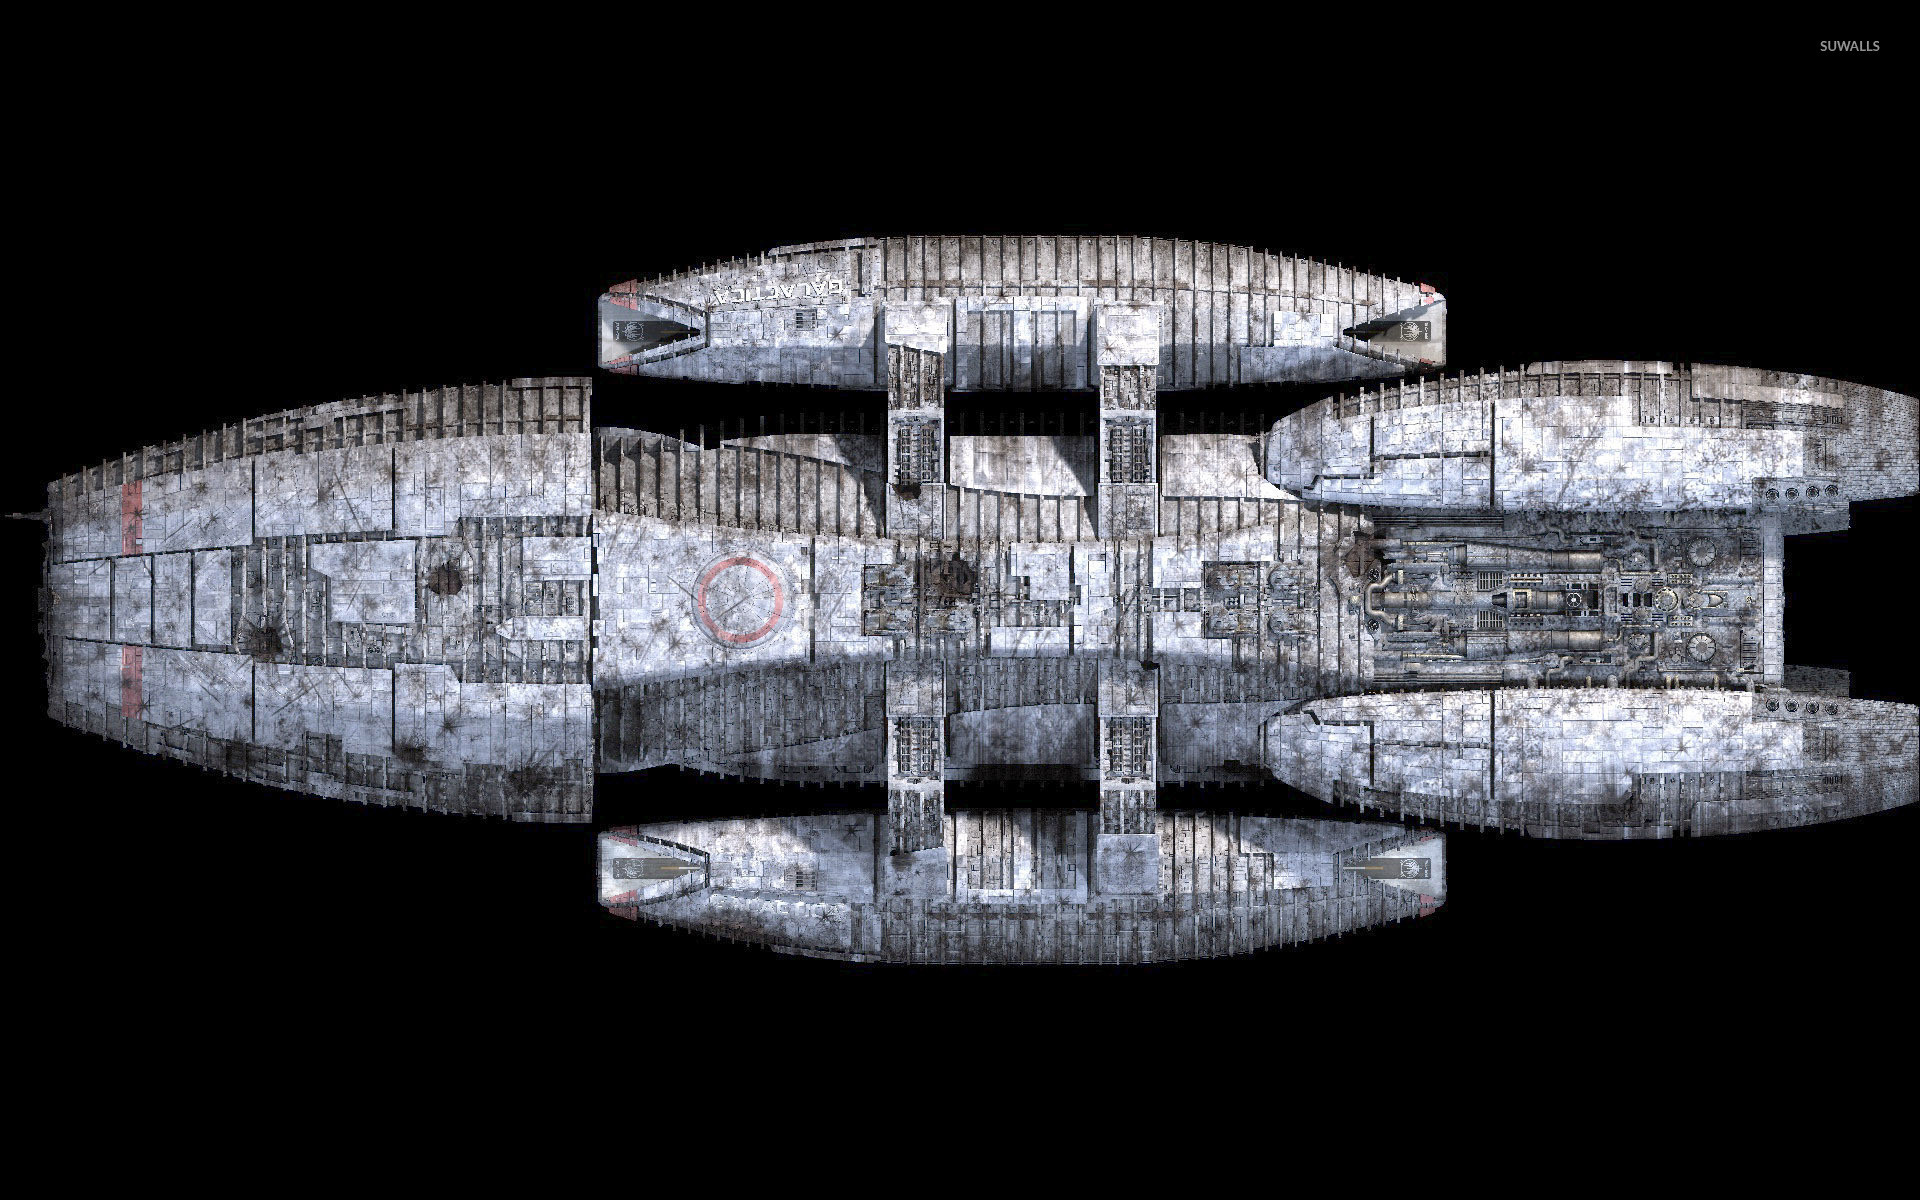 Battlestar Galactica Wallpapers – Wallpaper Cave